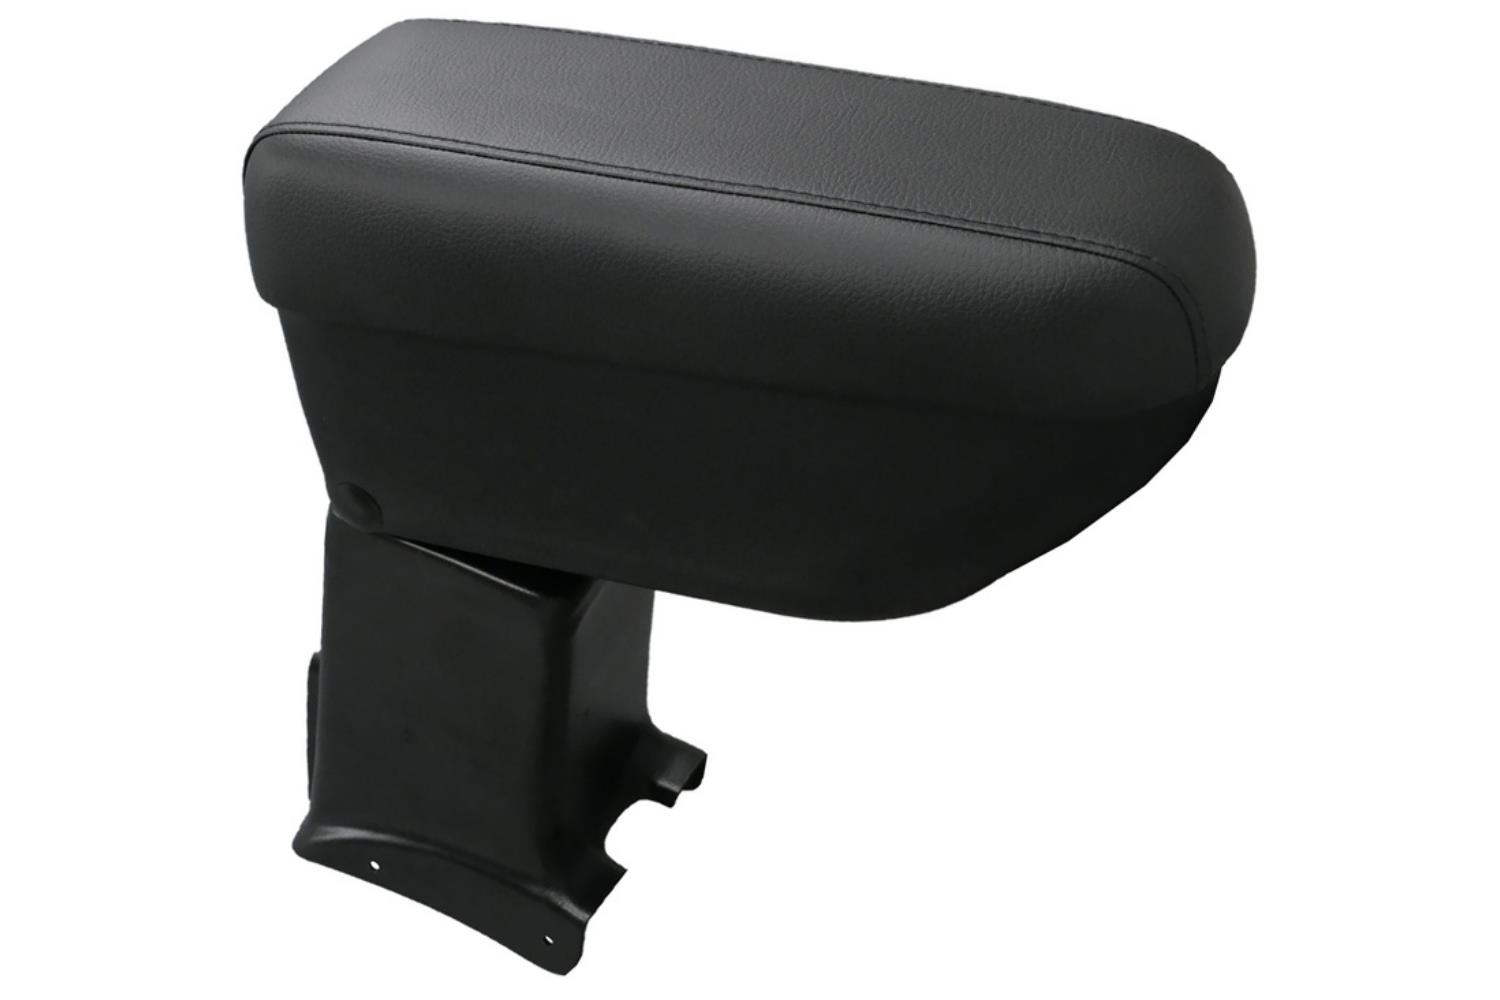 Armrest suitable for Dacia Sandero 2008-2012 5-door hatchback armrest Basic